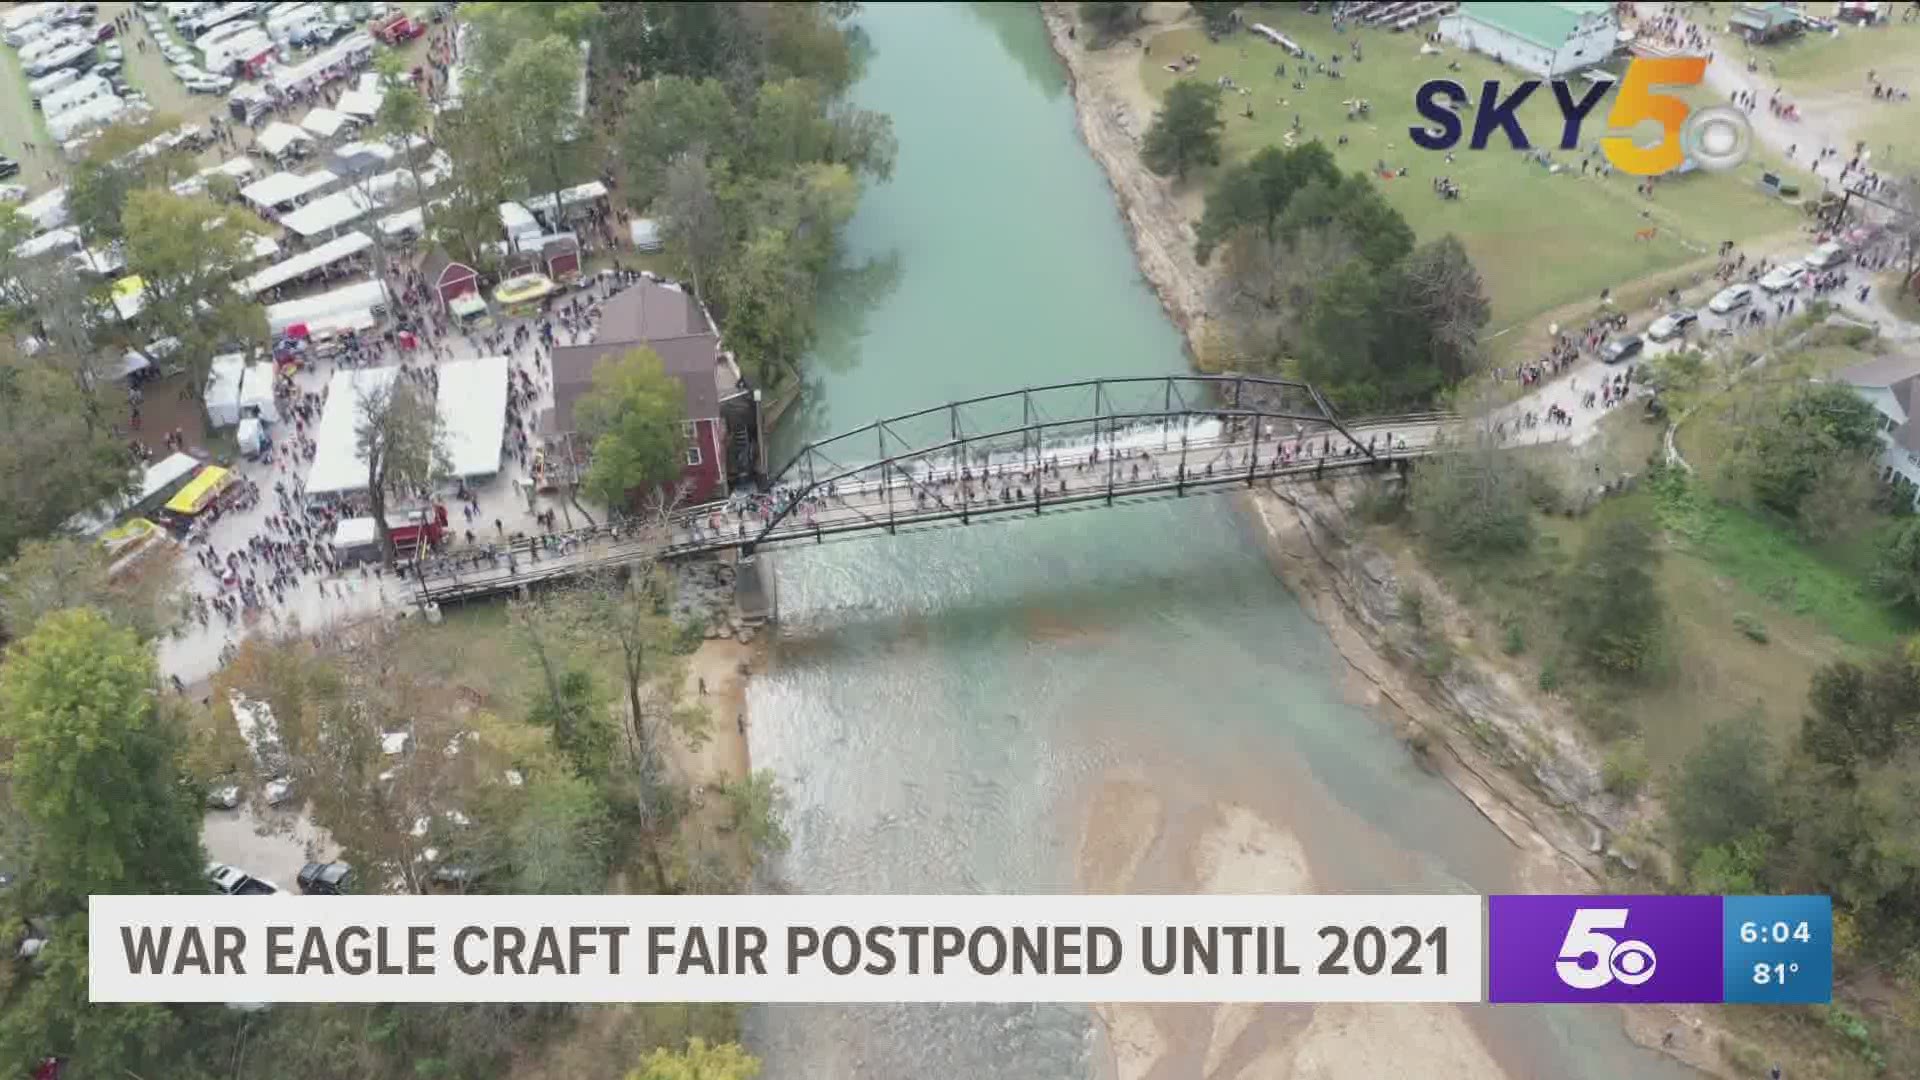 67th annual War Eagle Craft Fair postponed until 2021